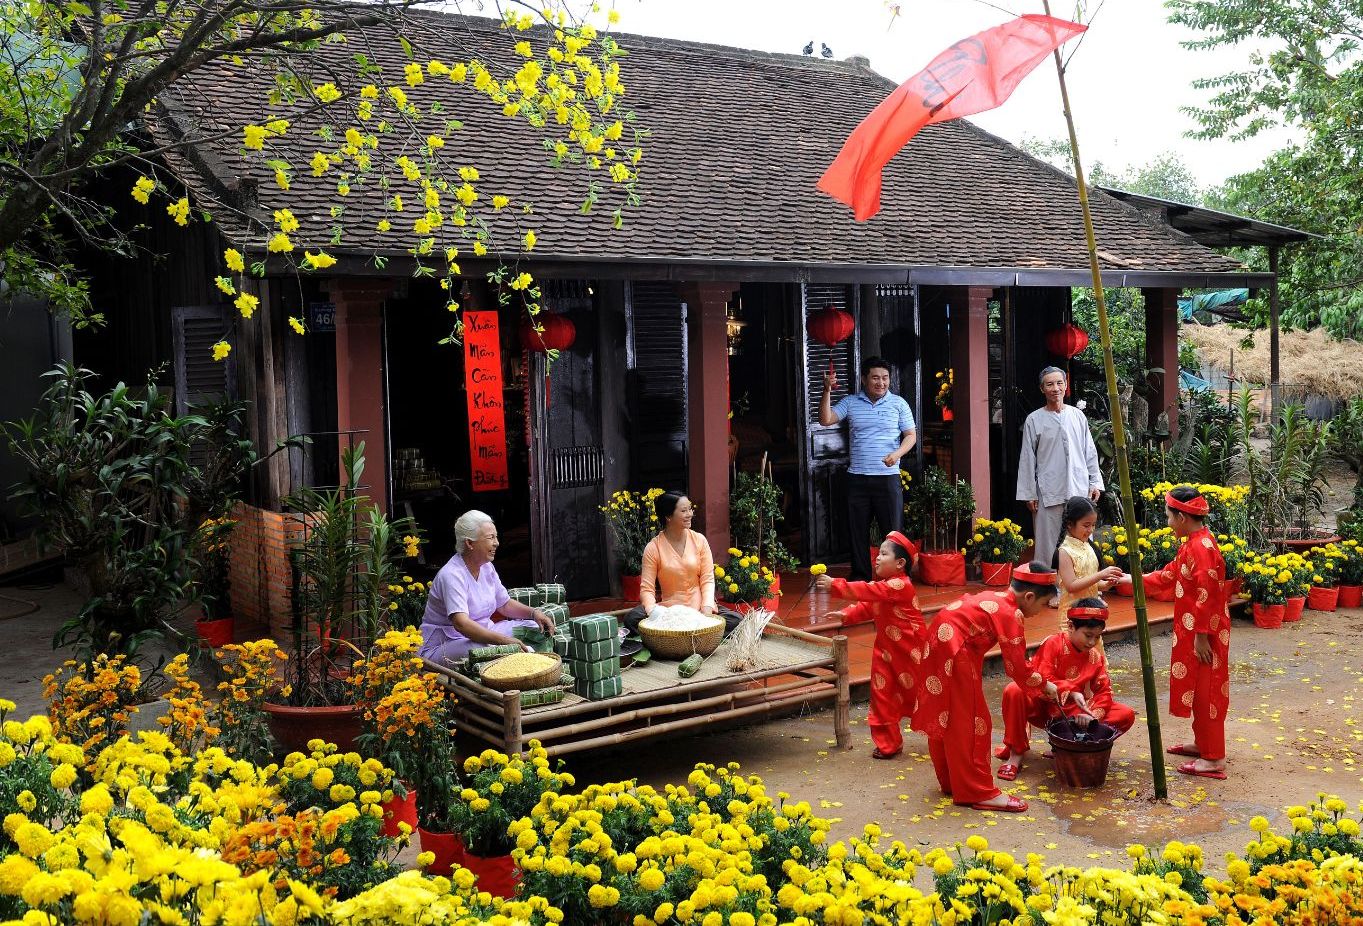 Tết Nguyên Đán là ngày lễ quan trọng nhất trong năm của người Việt. Đây là dịp để chúng ta sum vầy bên gia đình và tìm hiểu tinh hoa văn hóa truyền thống của đất nước. Xem hình ảnh về Tết Nguyên Đán để cảm nhận sự ấm áp và đậm đà của ngày lễ này.